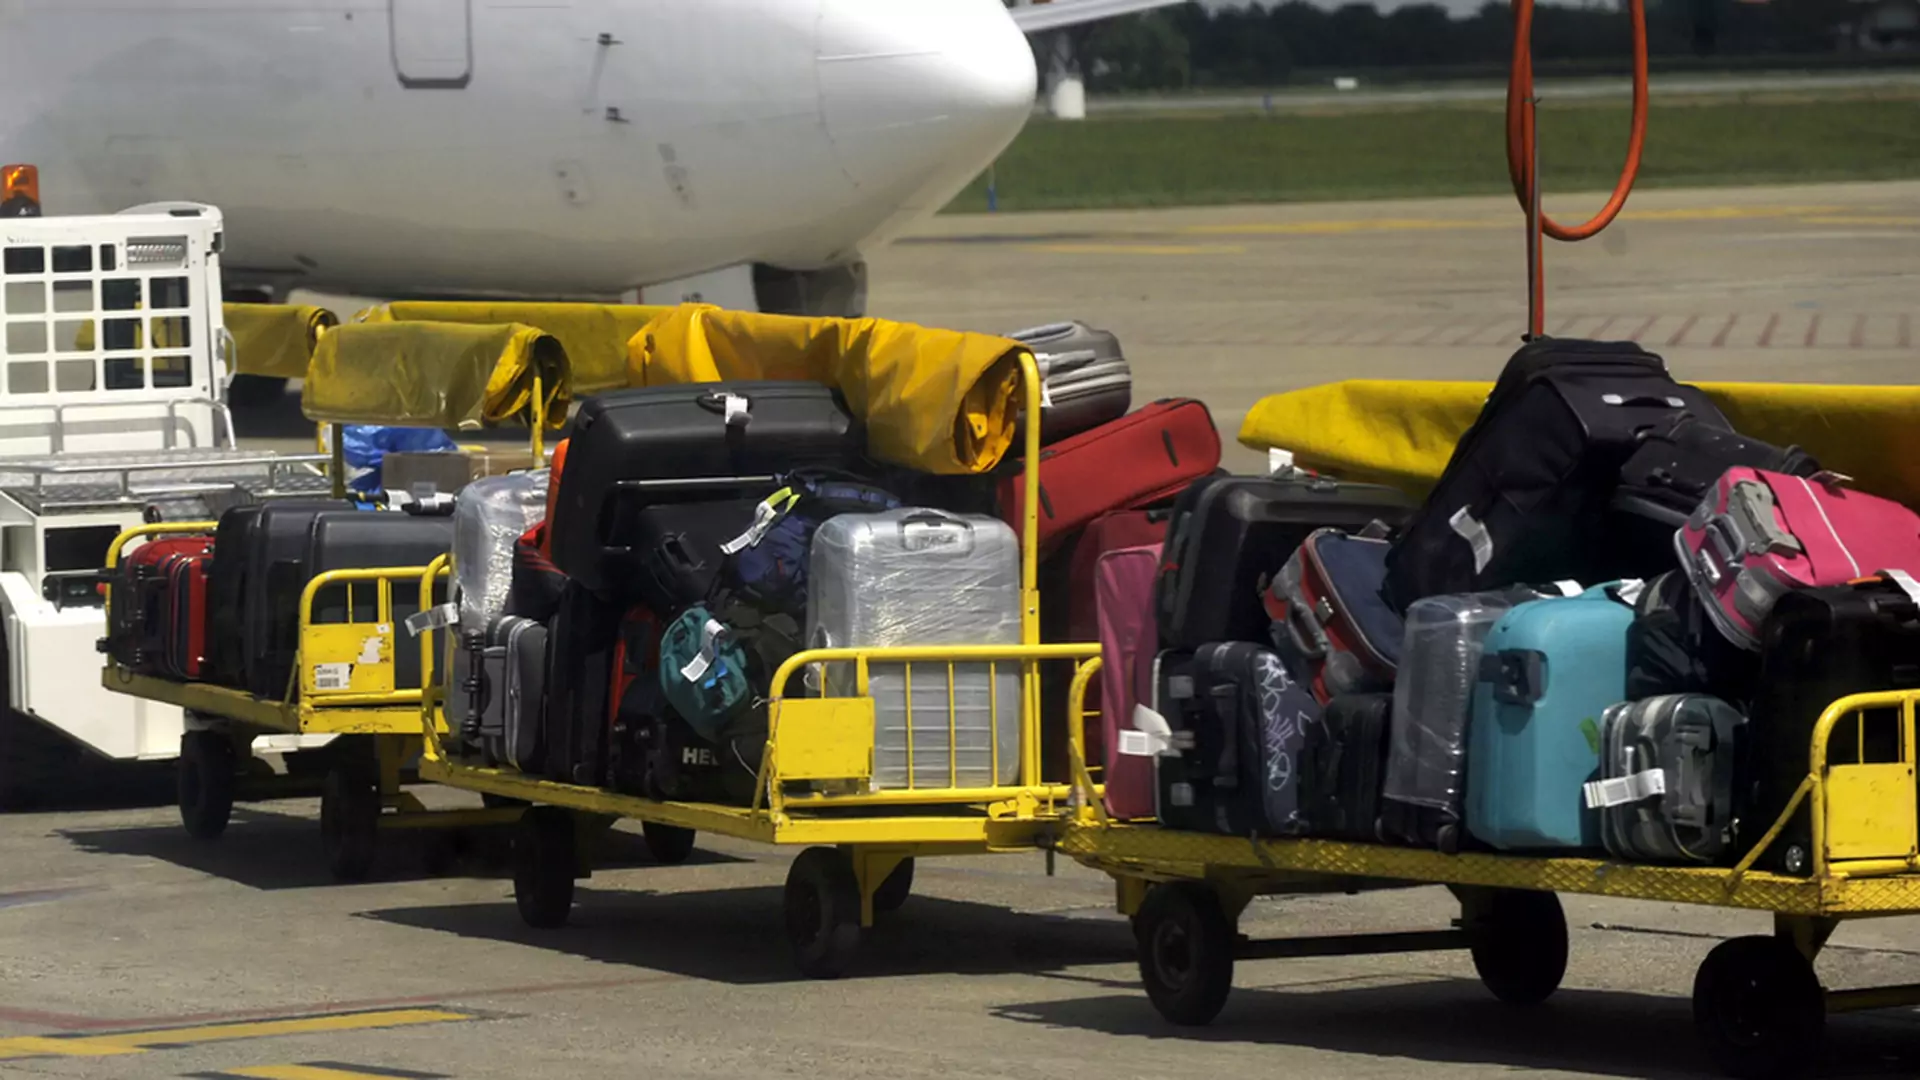 Nowy trend wśród podróżnych. Owijają walizki folią